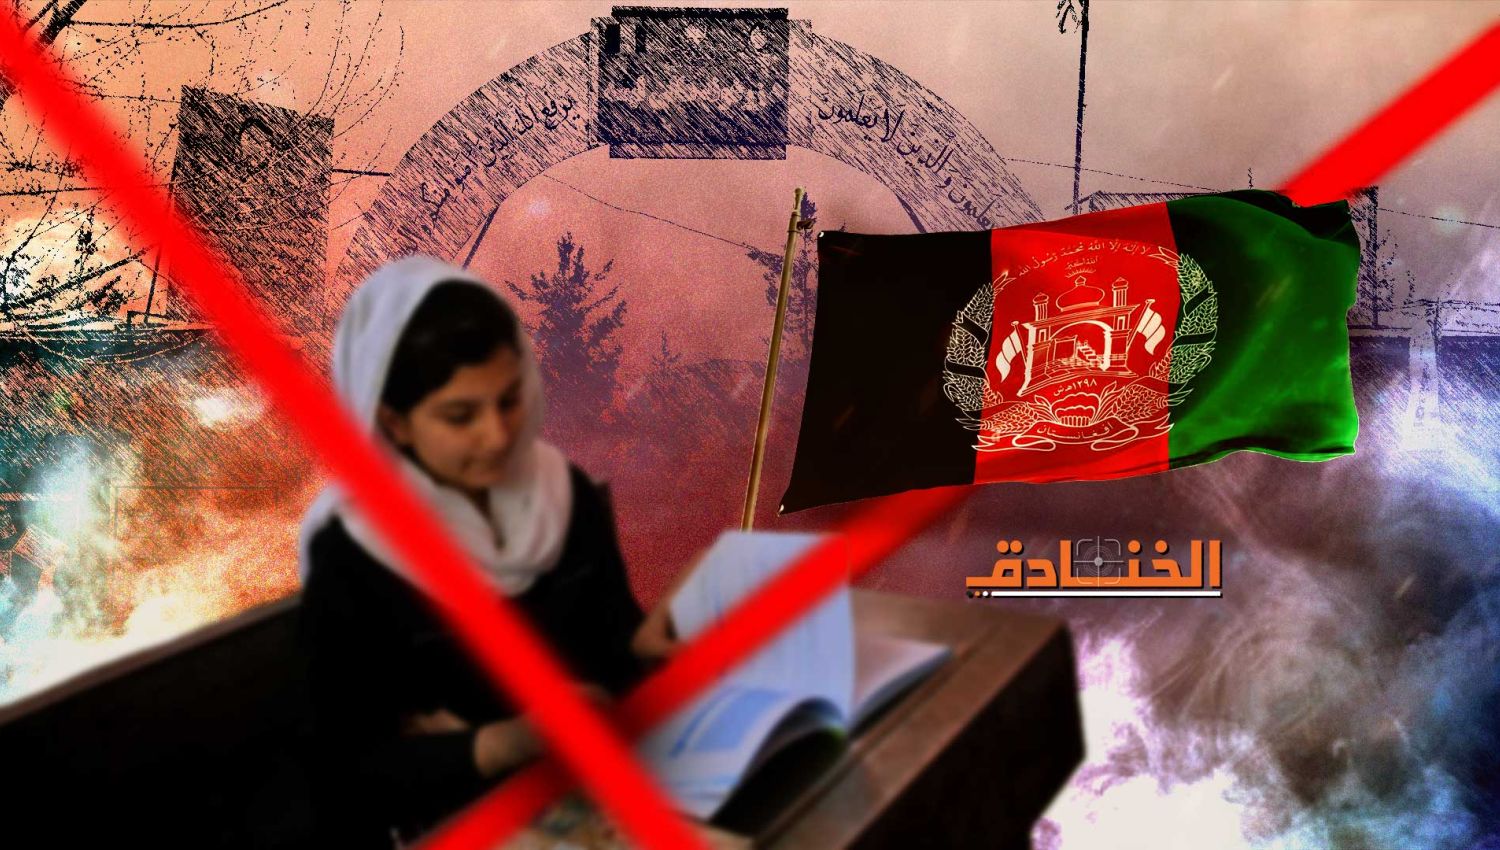 وصفة طالبان للتعليم: كلاشينكوف وتفجيرات 